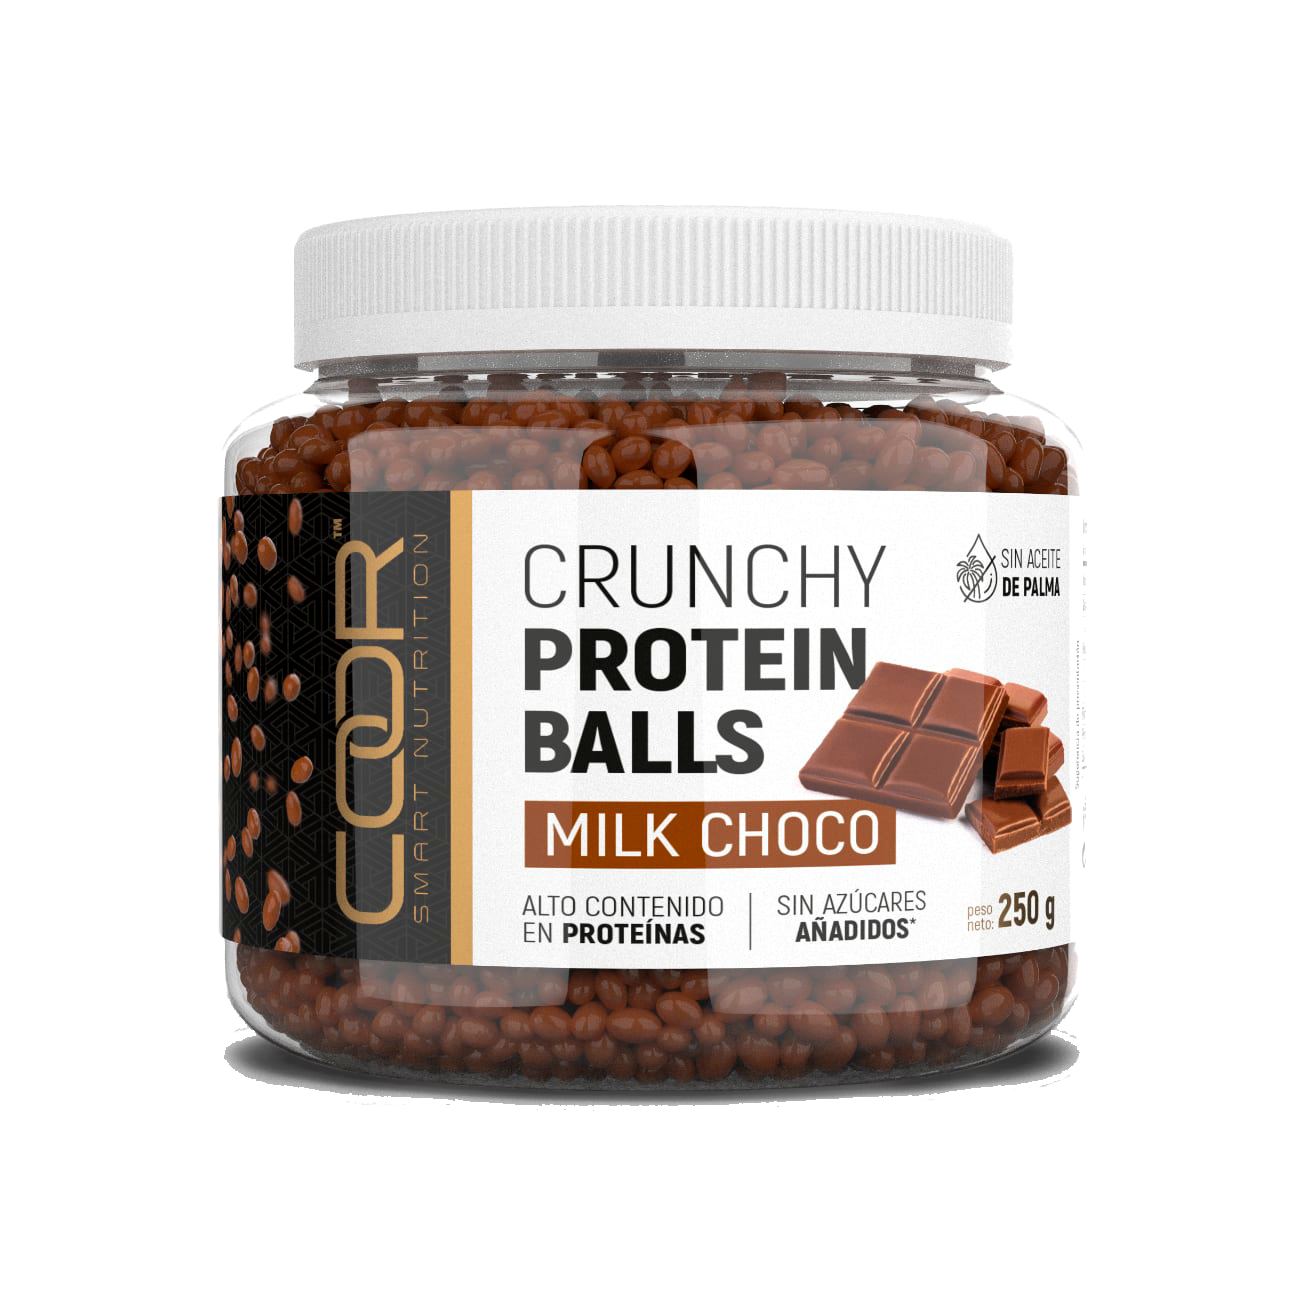 Crunchy Protein Balls Milk Choco Coor